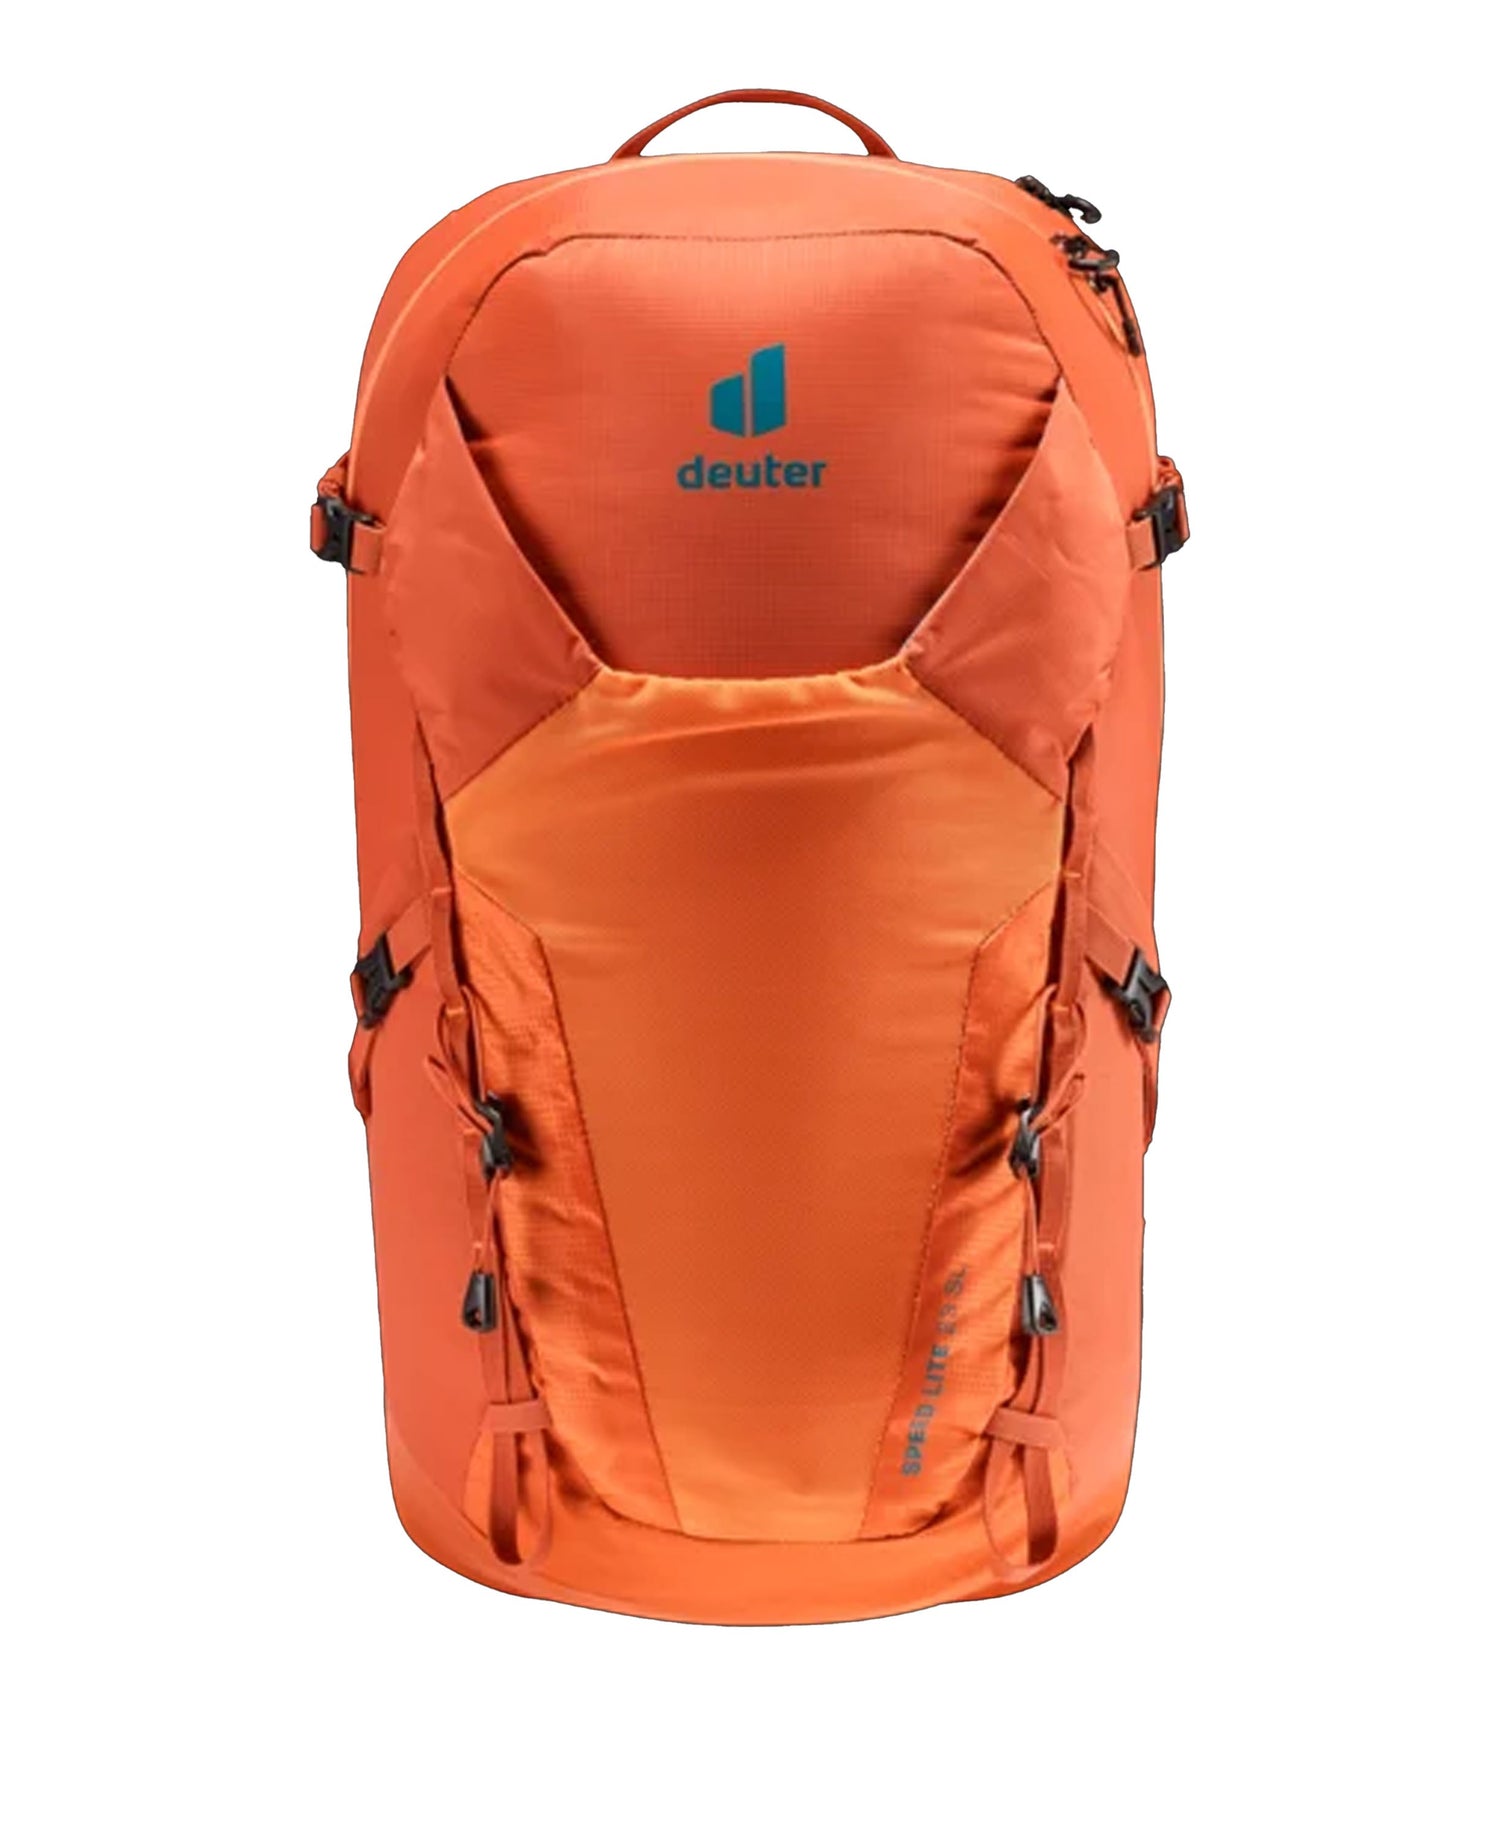 Speed Lite 23 Backpack - Paprika/Saffron